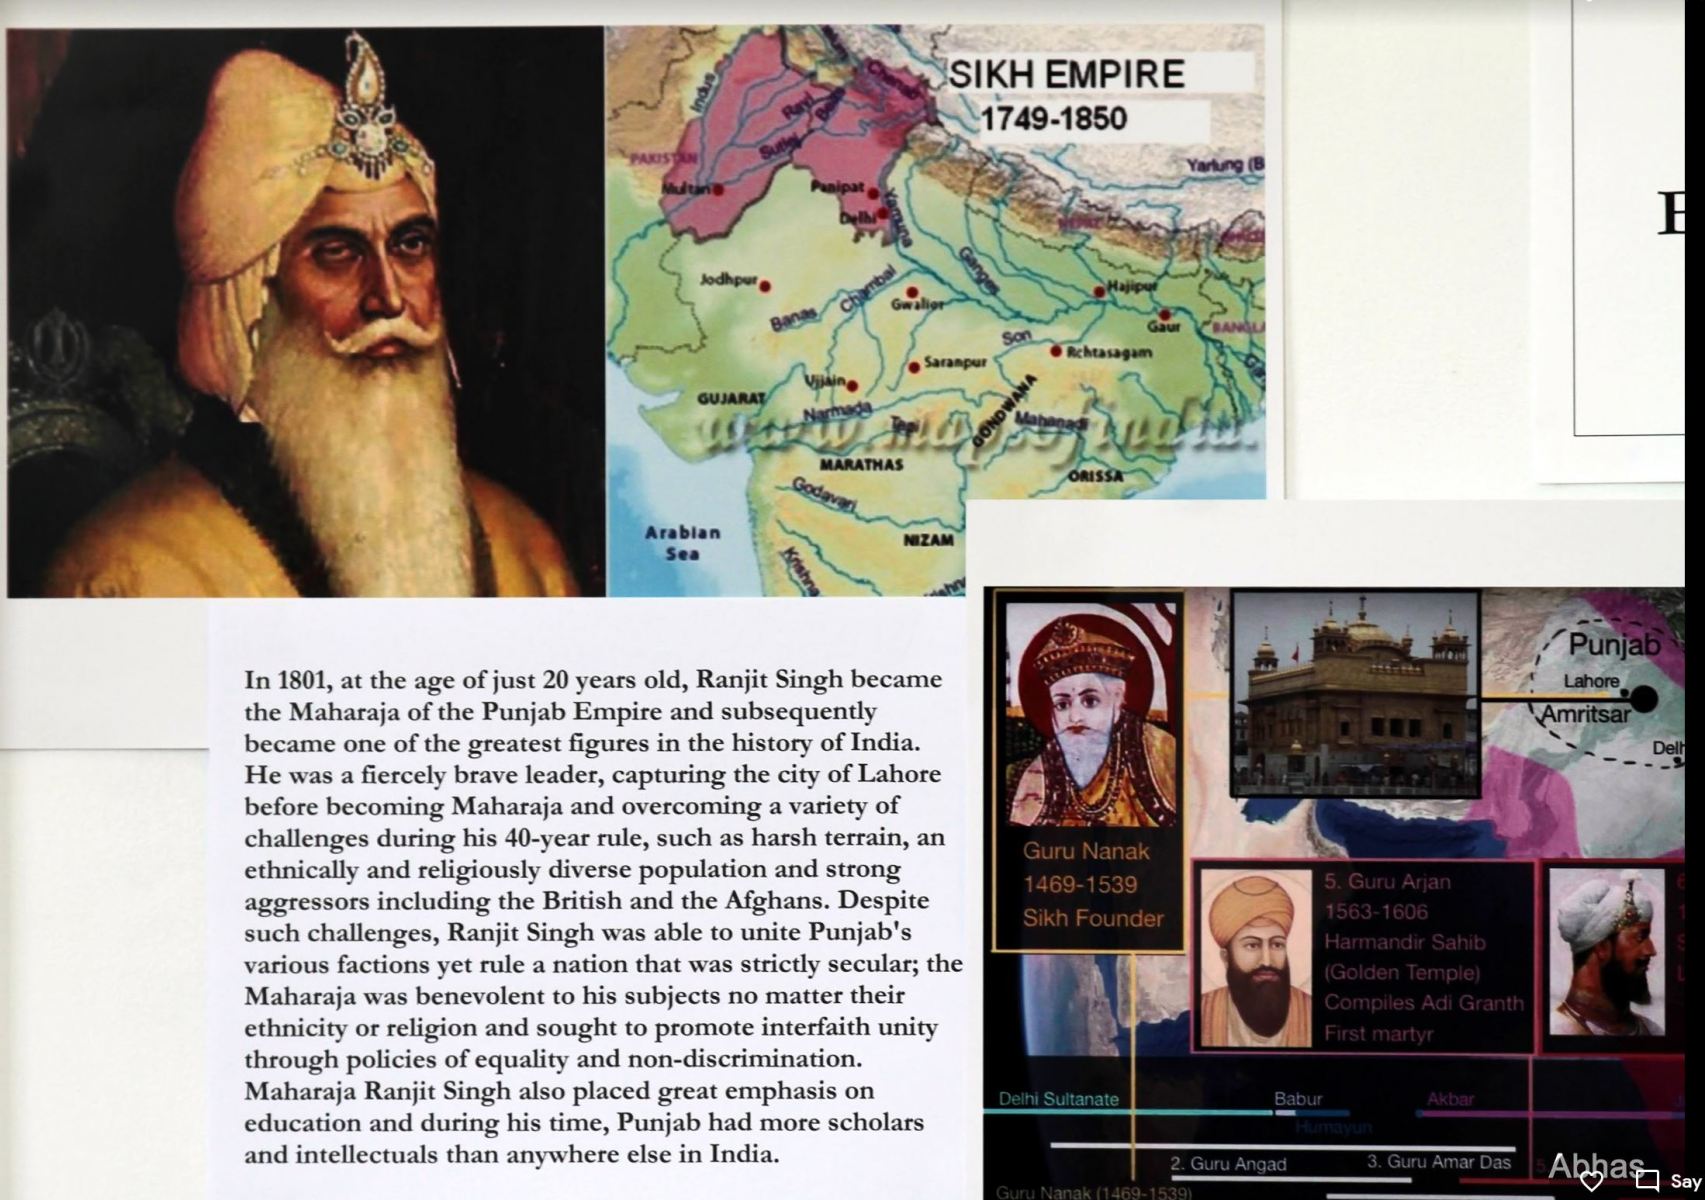 Sikh-empite-1749-1850